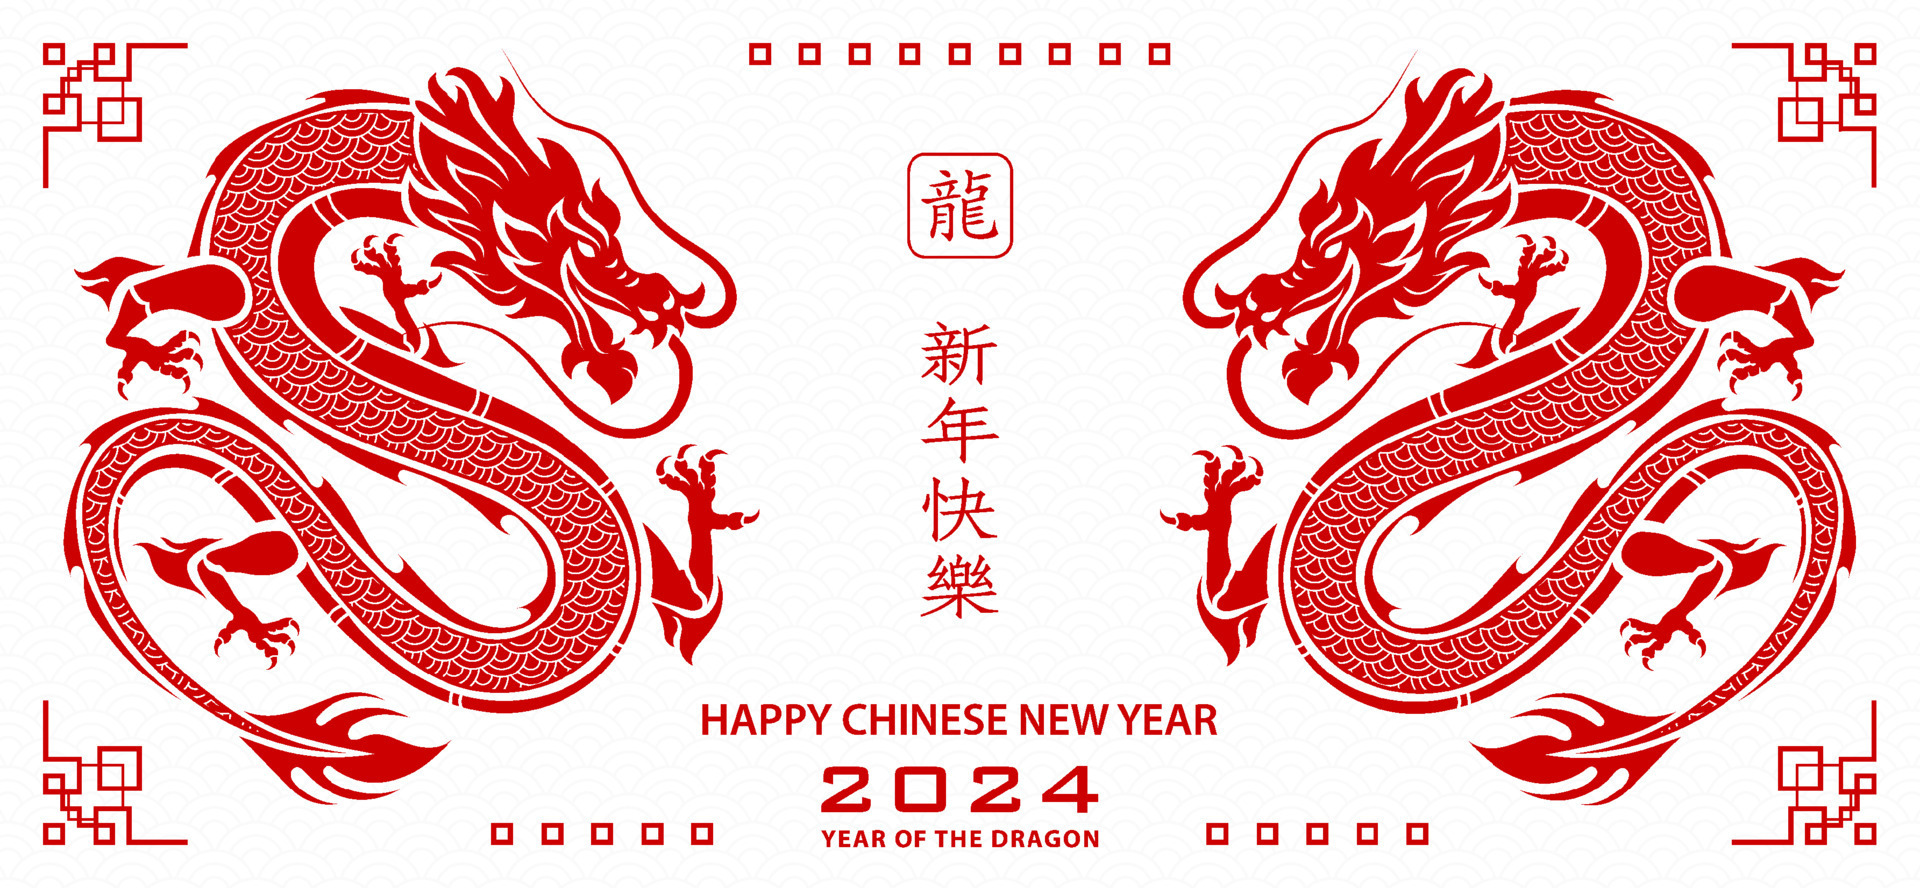 Родившиеся в год дракона 2024. Китайский год дракона 2024. Китайский новый год дракона 2024. Символ года дракон. Китайский новый дракон 2024.